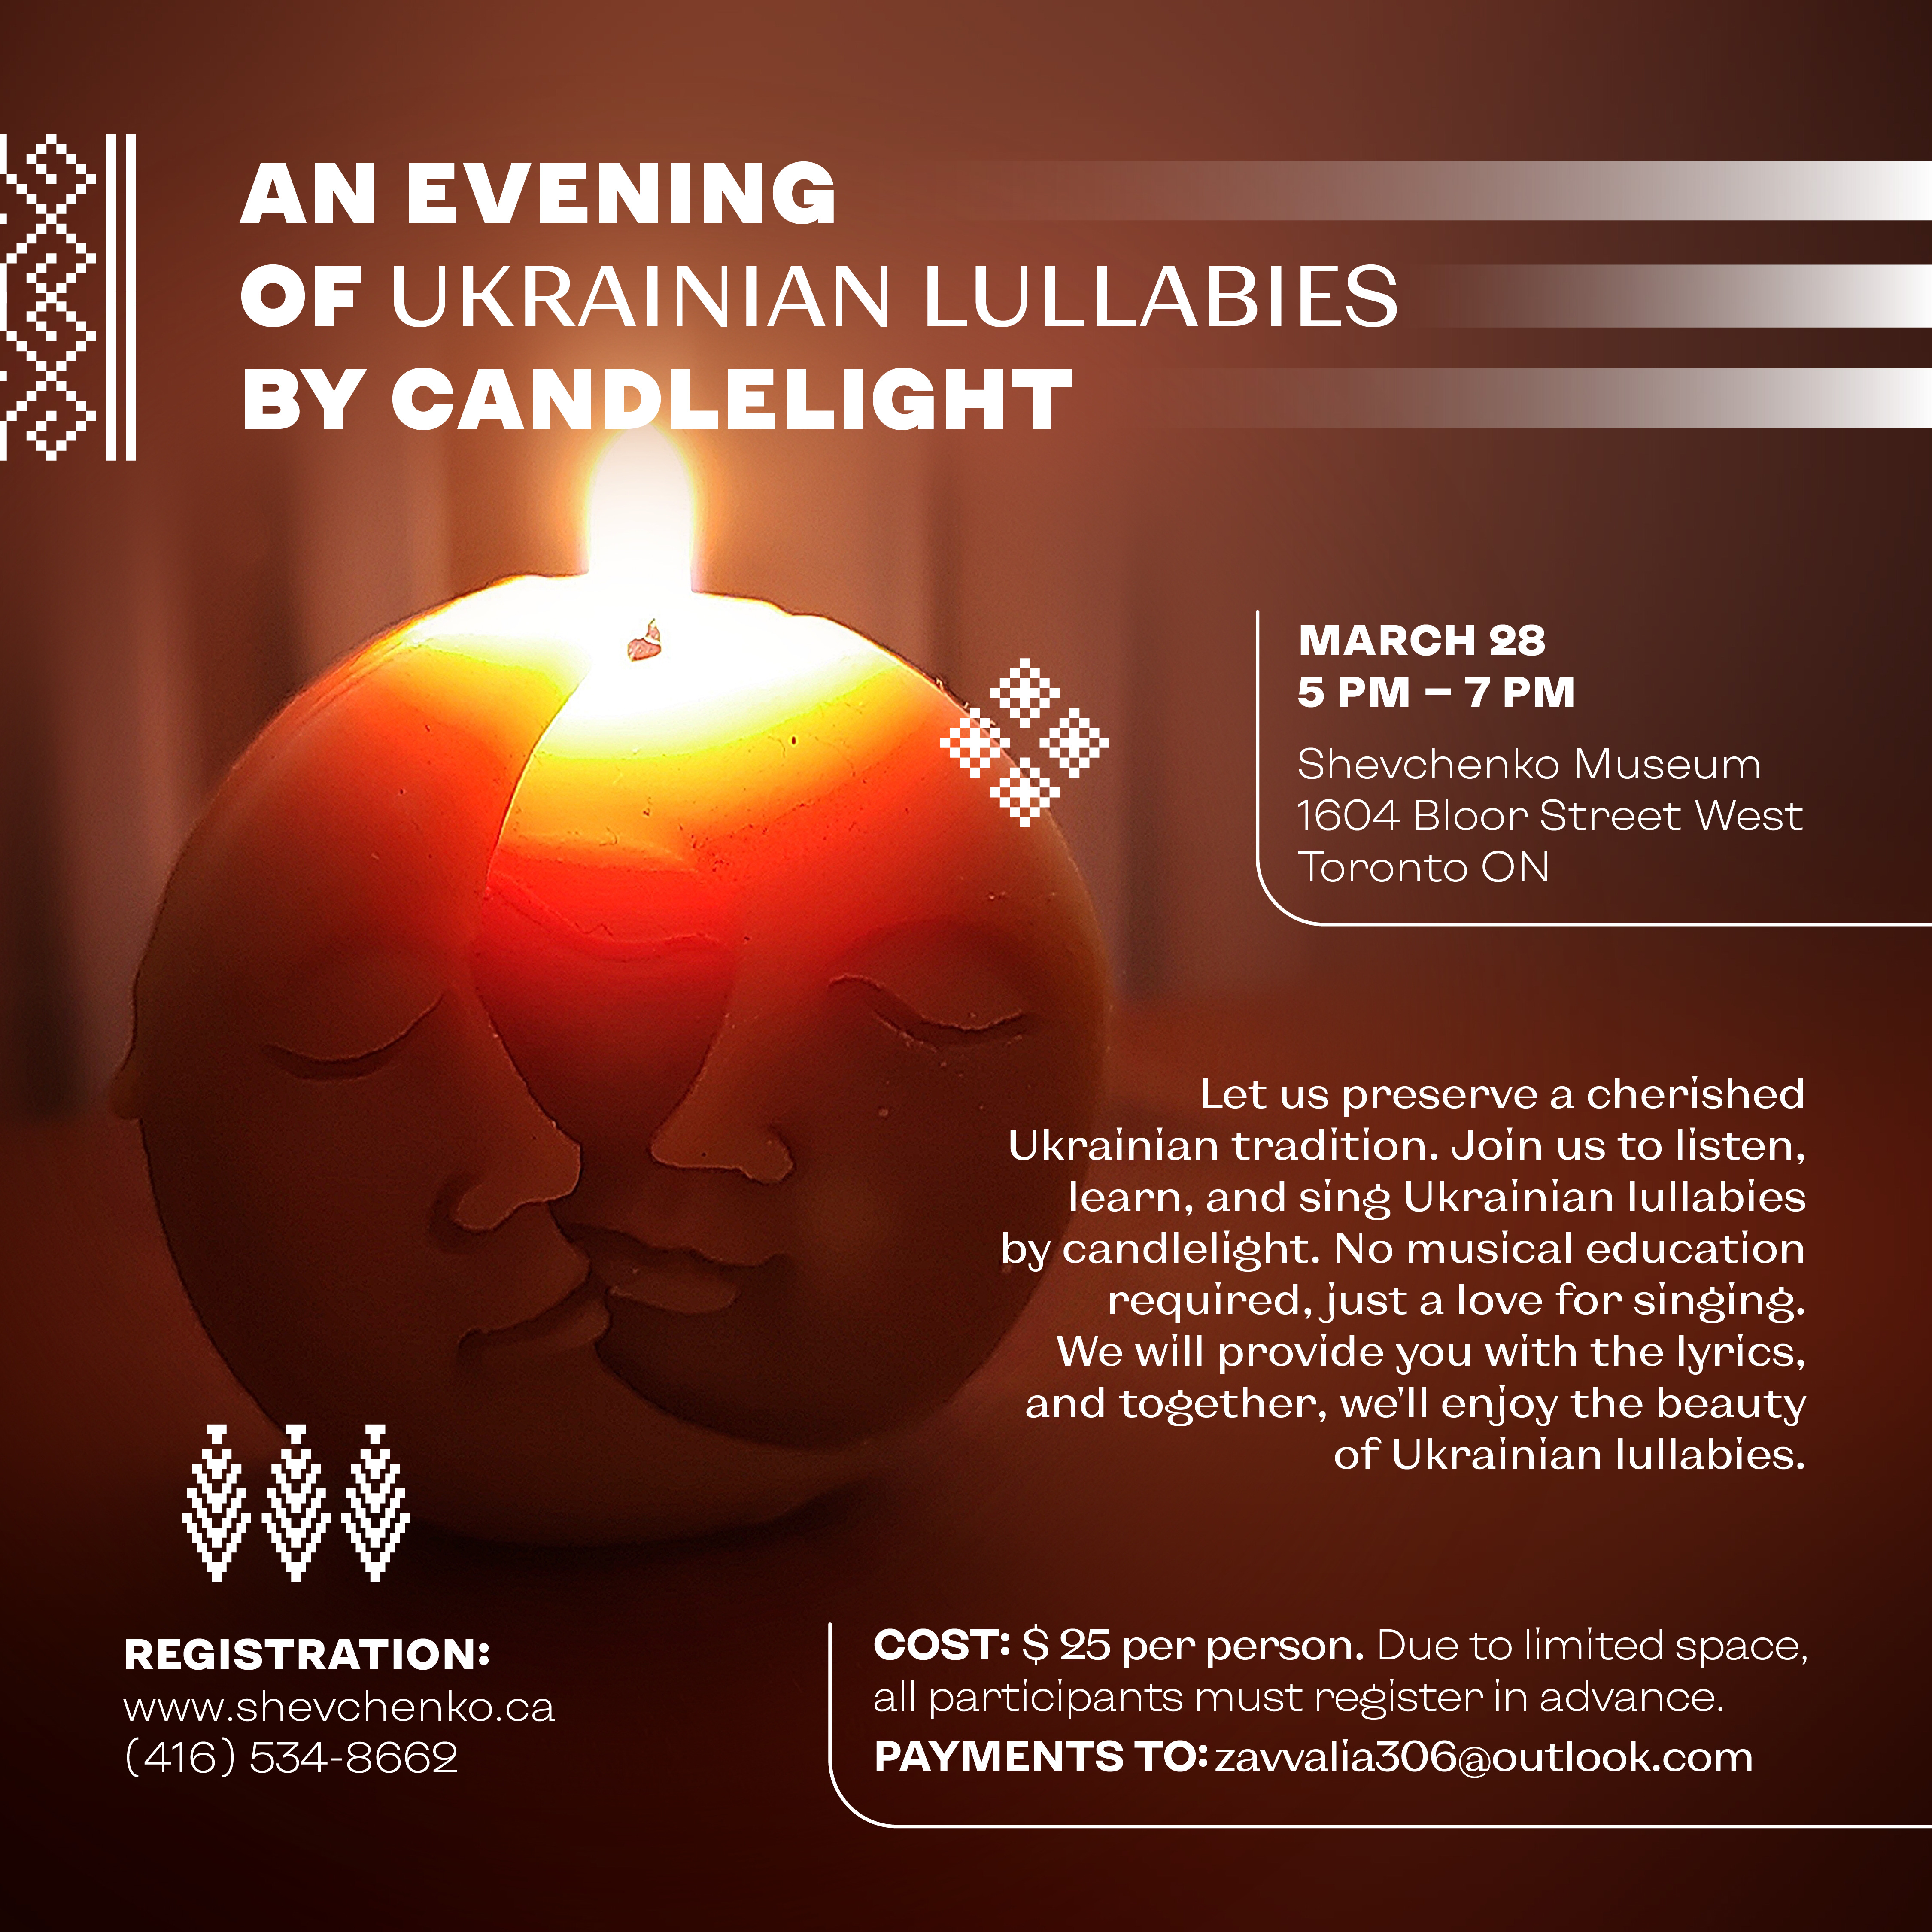 An evening of Ukrainian lullabies by candlelight